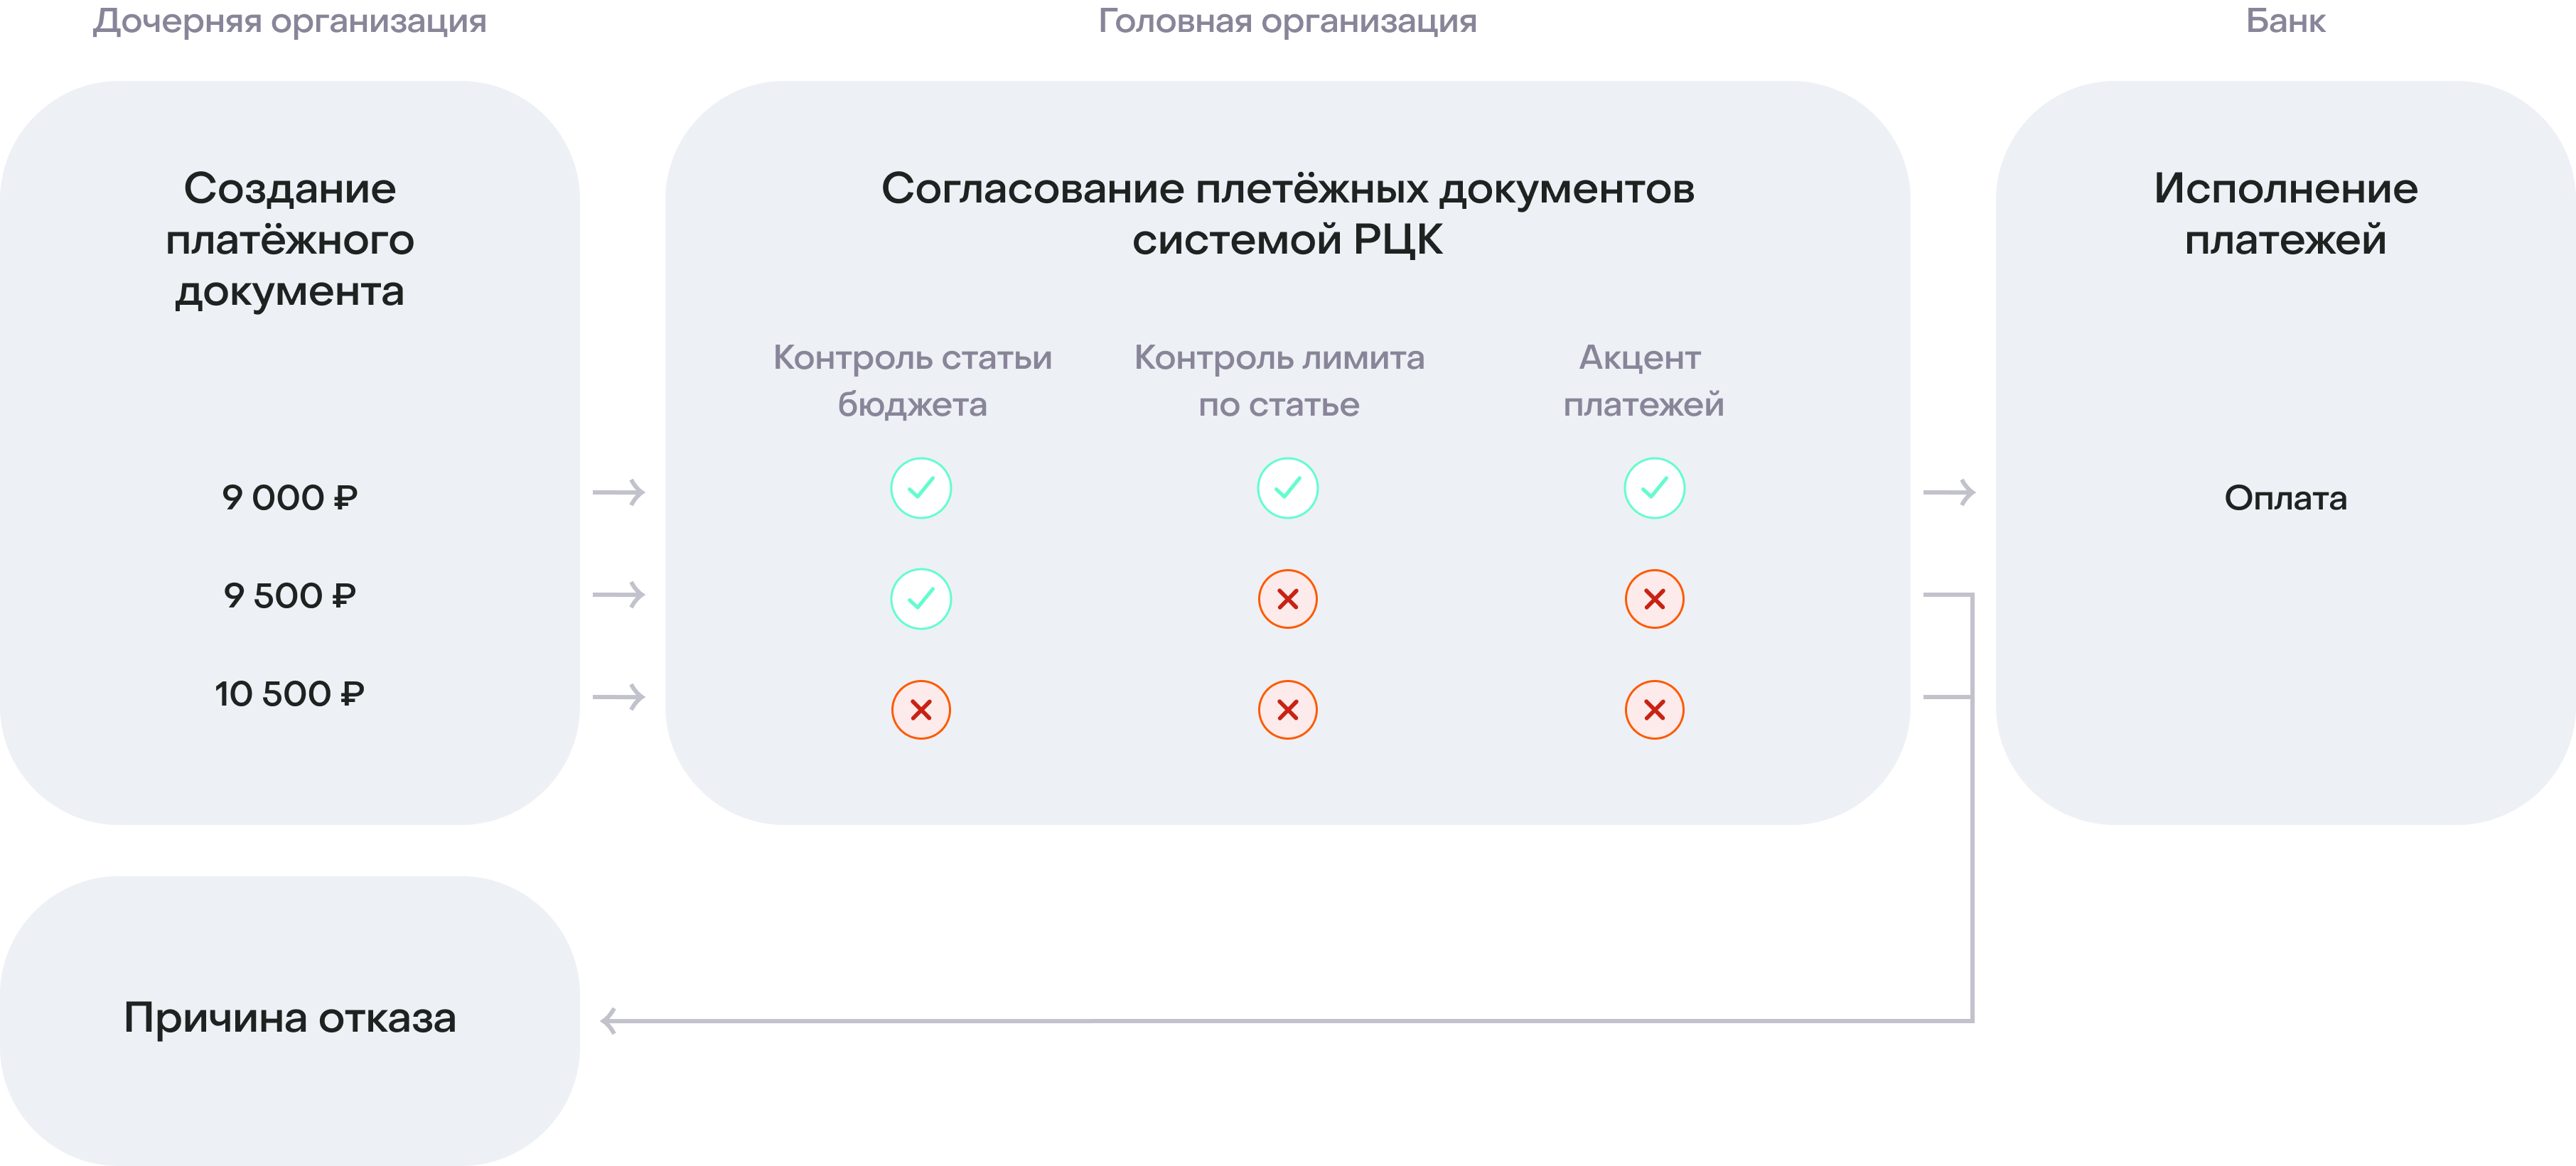 Схема системы РЦК от Банка ДОМ.РФ